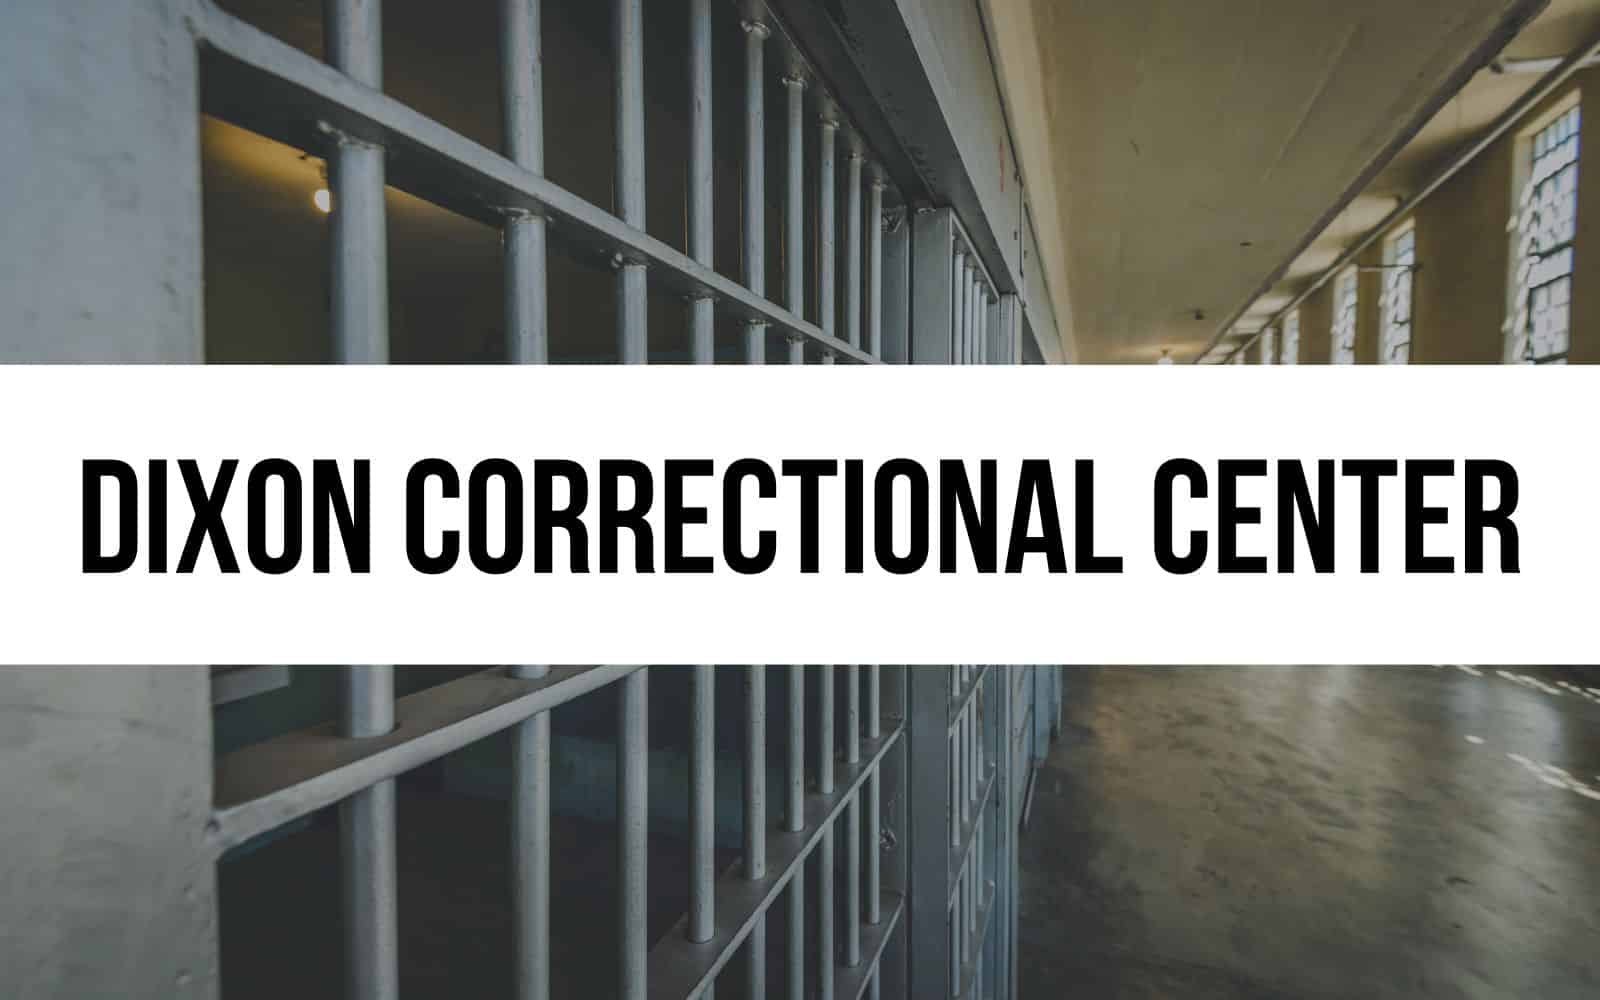 Dixon Correctional Center